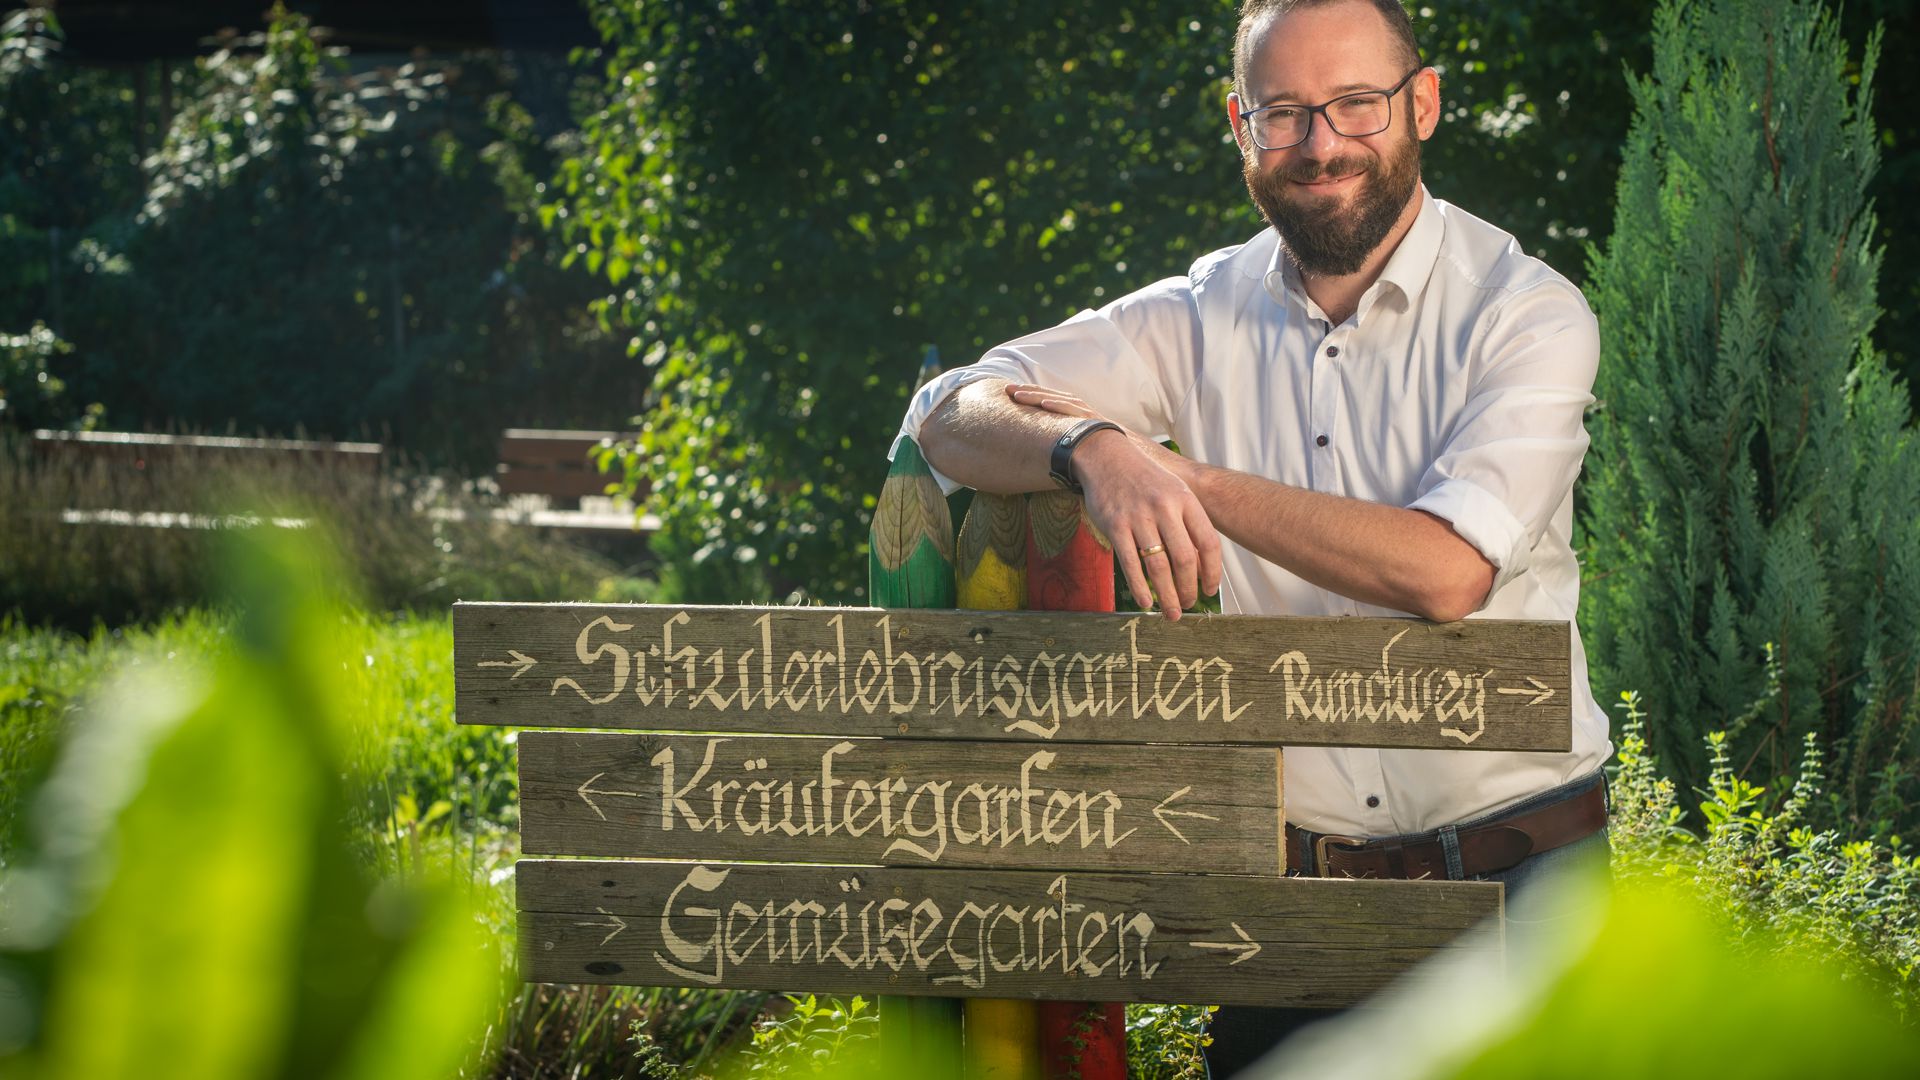 Benjamin Böhm, neuer Schulleiter in Böfingen, Schule soll jetzt ein Grundschulzentrum werden
Neuer Schulleiter an Eduard-Mörike-Schule